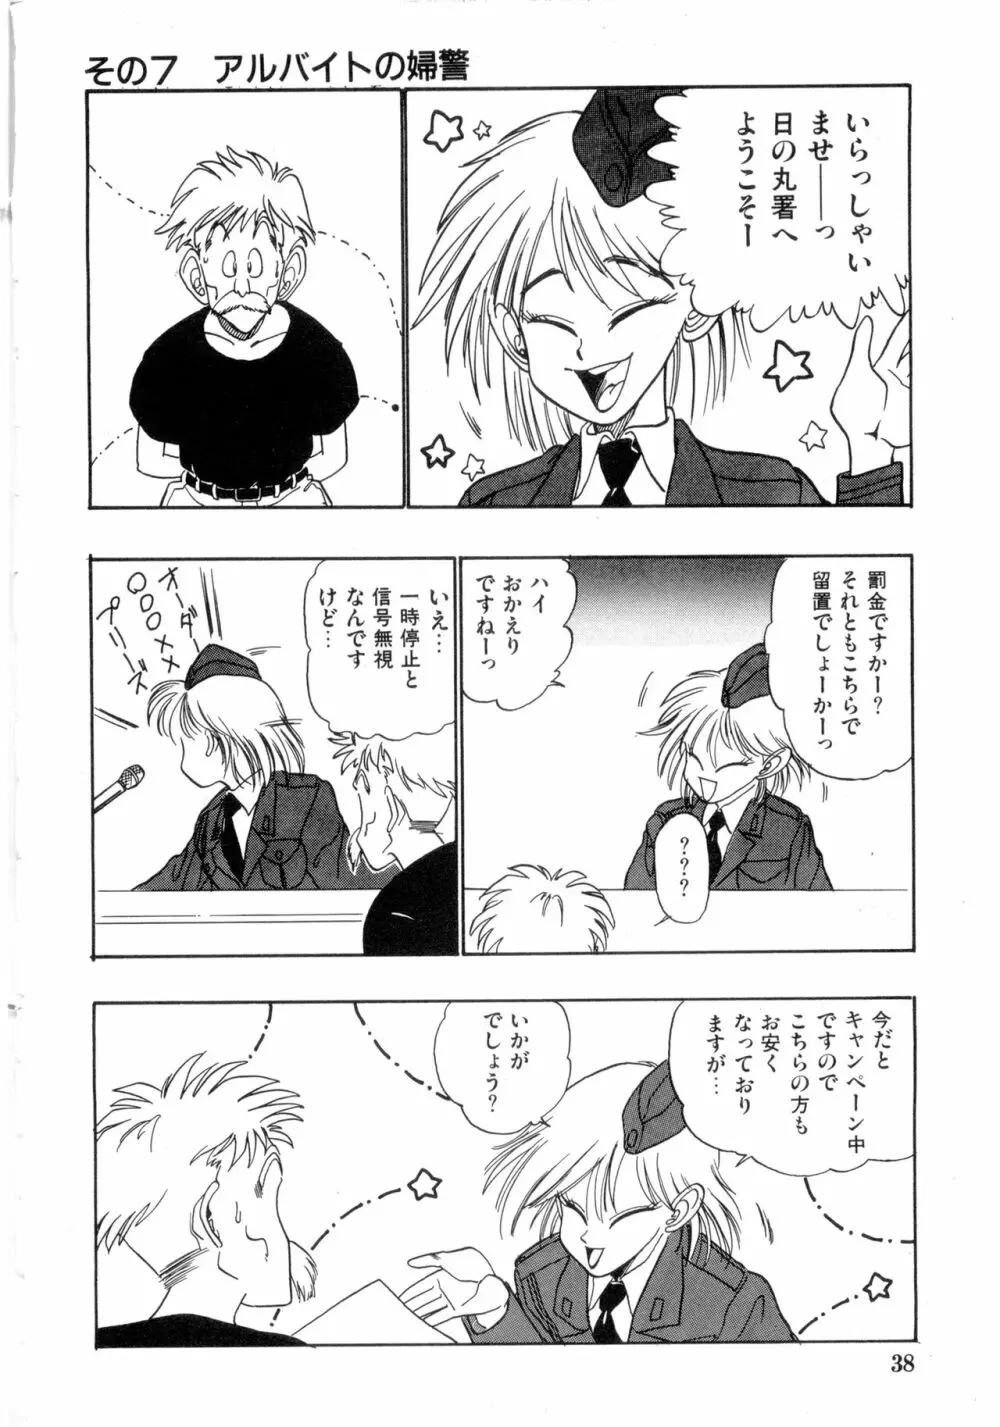 WAKE UP!! がんばれ婦警さんコミック VOL.2 38ページ